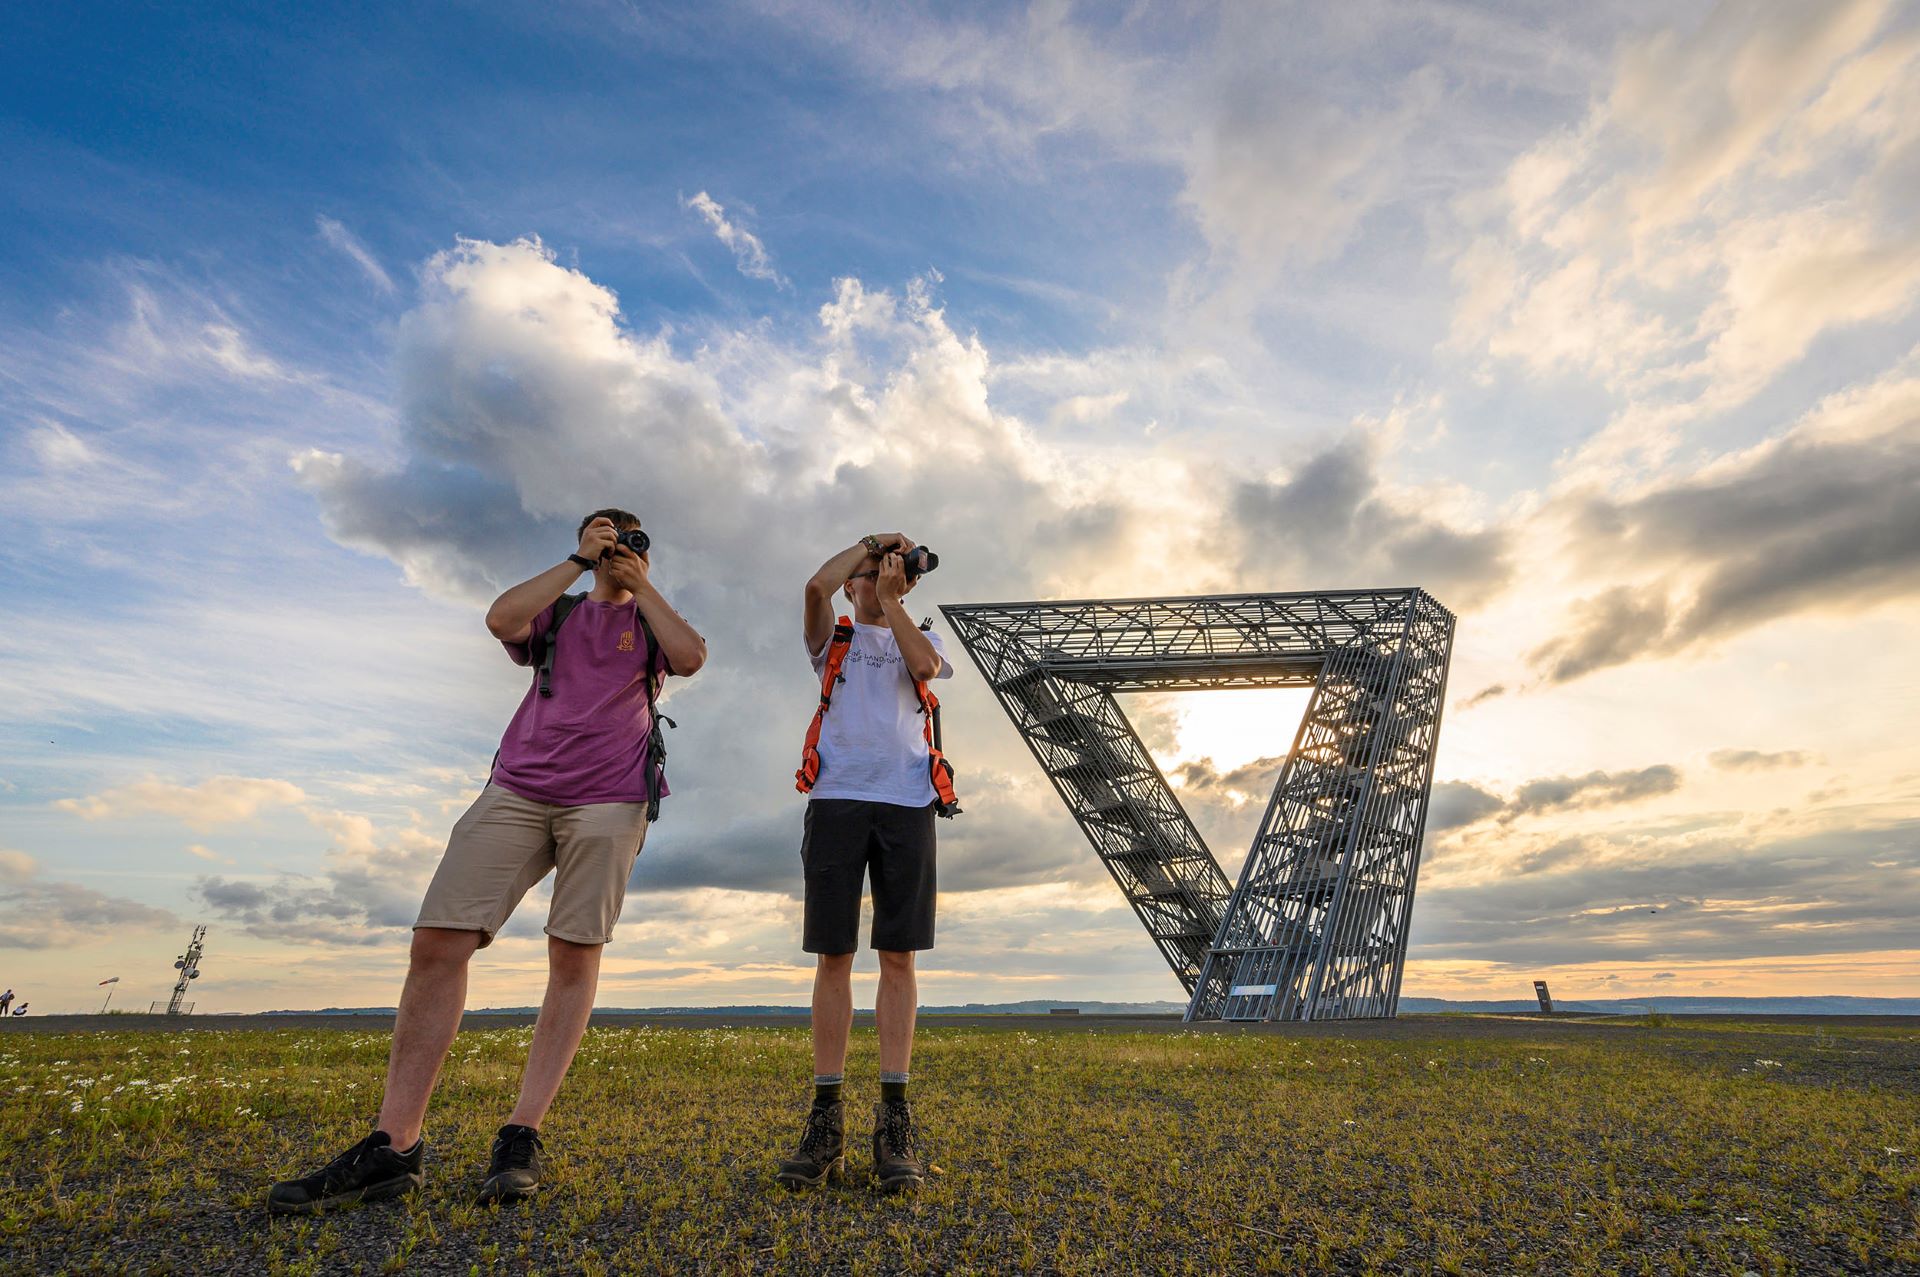 Deux membres du collectif Saarroamers photographient la vue depuis le sommet de la colline de Saarpolygon. Derrière eux, on peut voir le Saarpolygon sur fond de ciel bleu nuit avec des nuages.